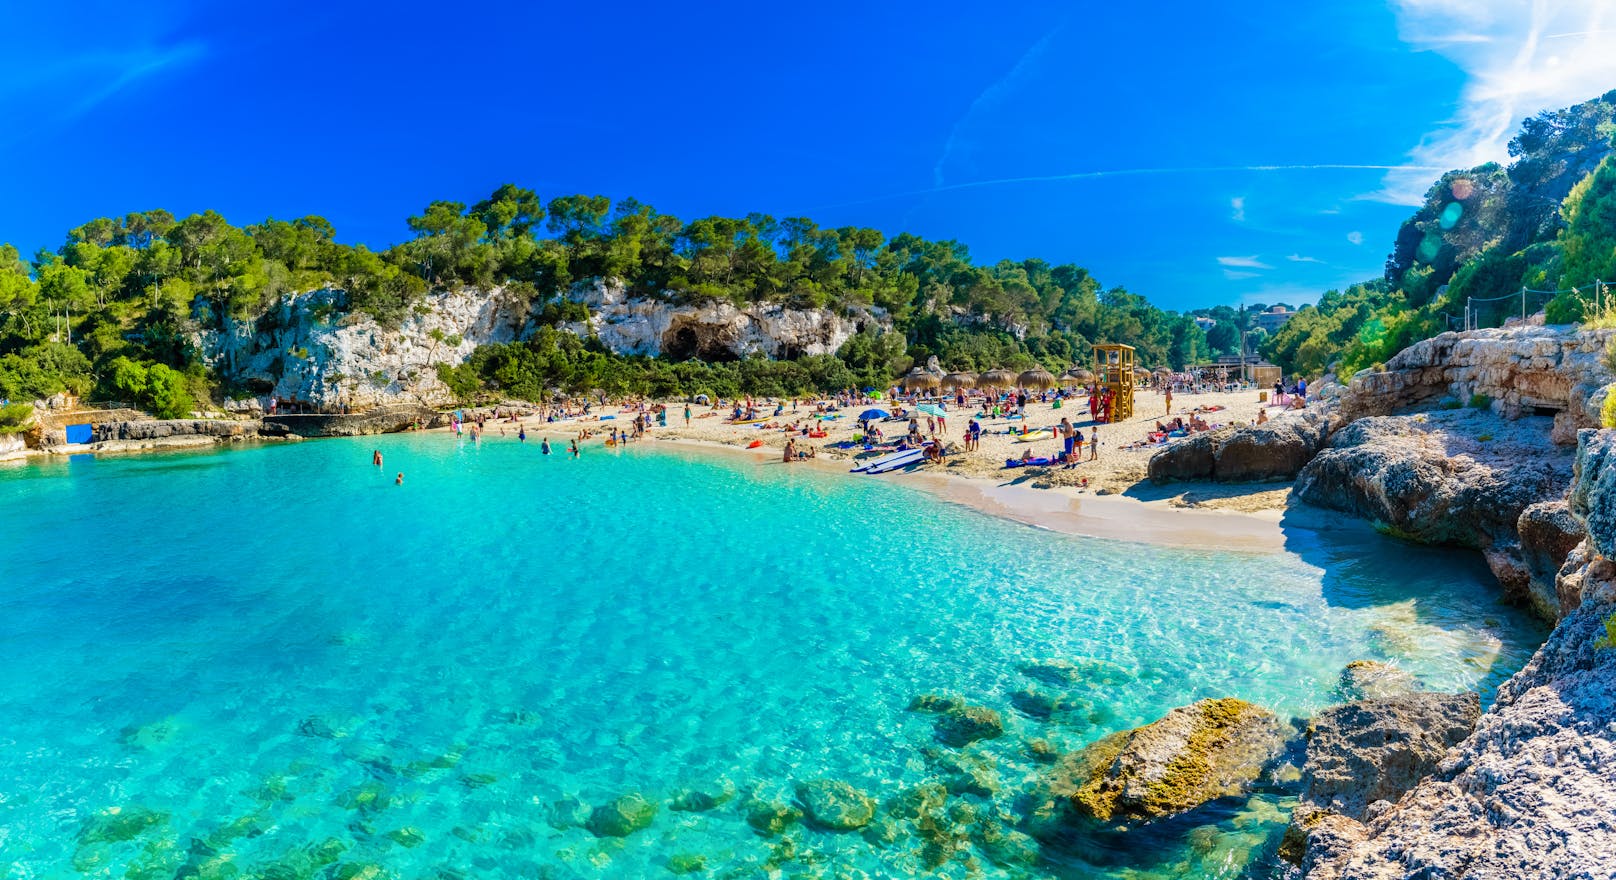 <strong>Platz 1: </strong>Mit 157.980 Suchanfragen landet <strong>Spanien </strong>auf dem ersten Platz der beliebtesten Urlaubsziele der Deutschen. Und das mit gutem Grund: Neben bekannten balearischen Inseln wie Mallorca oder Ibiza überzeugen die Kanarischen Inseln mit ihrer rauen Schönheit.